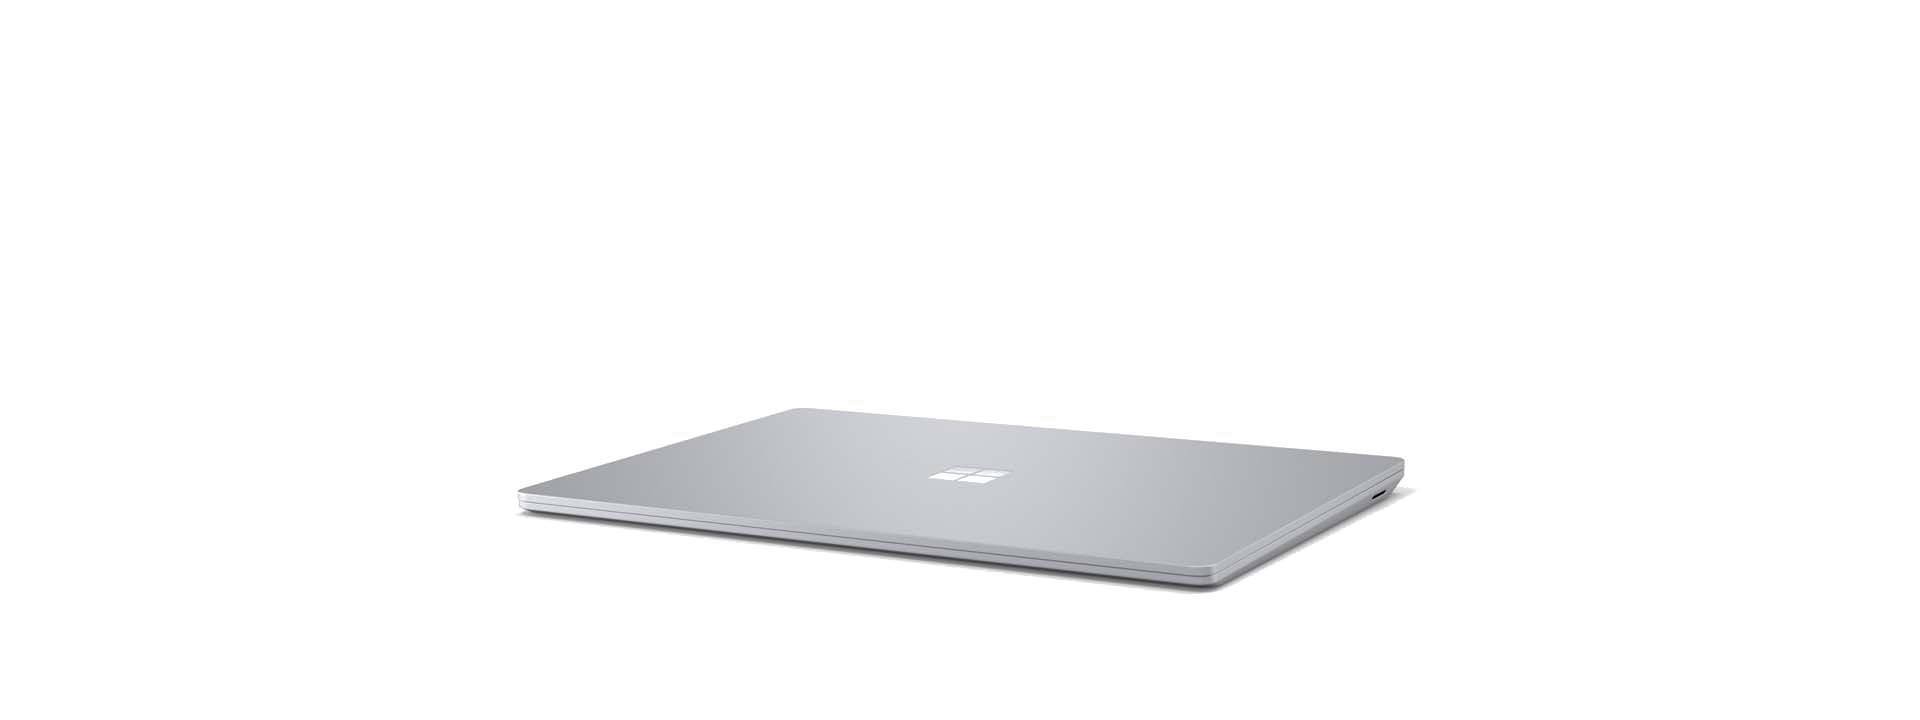 Surface Laptop 3 in einem Winkel mit geschlossenem Bildschirm